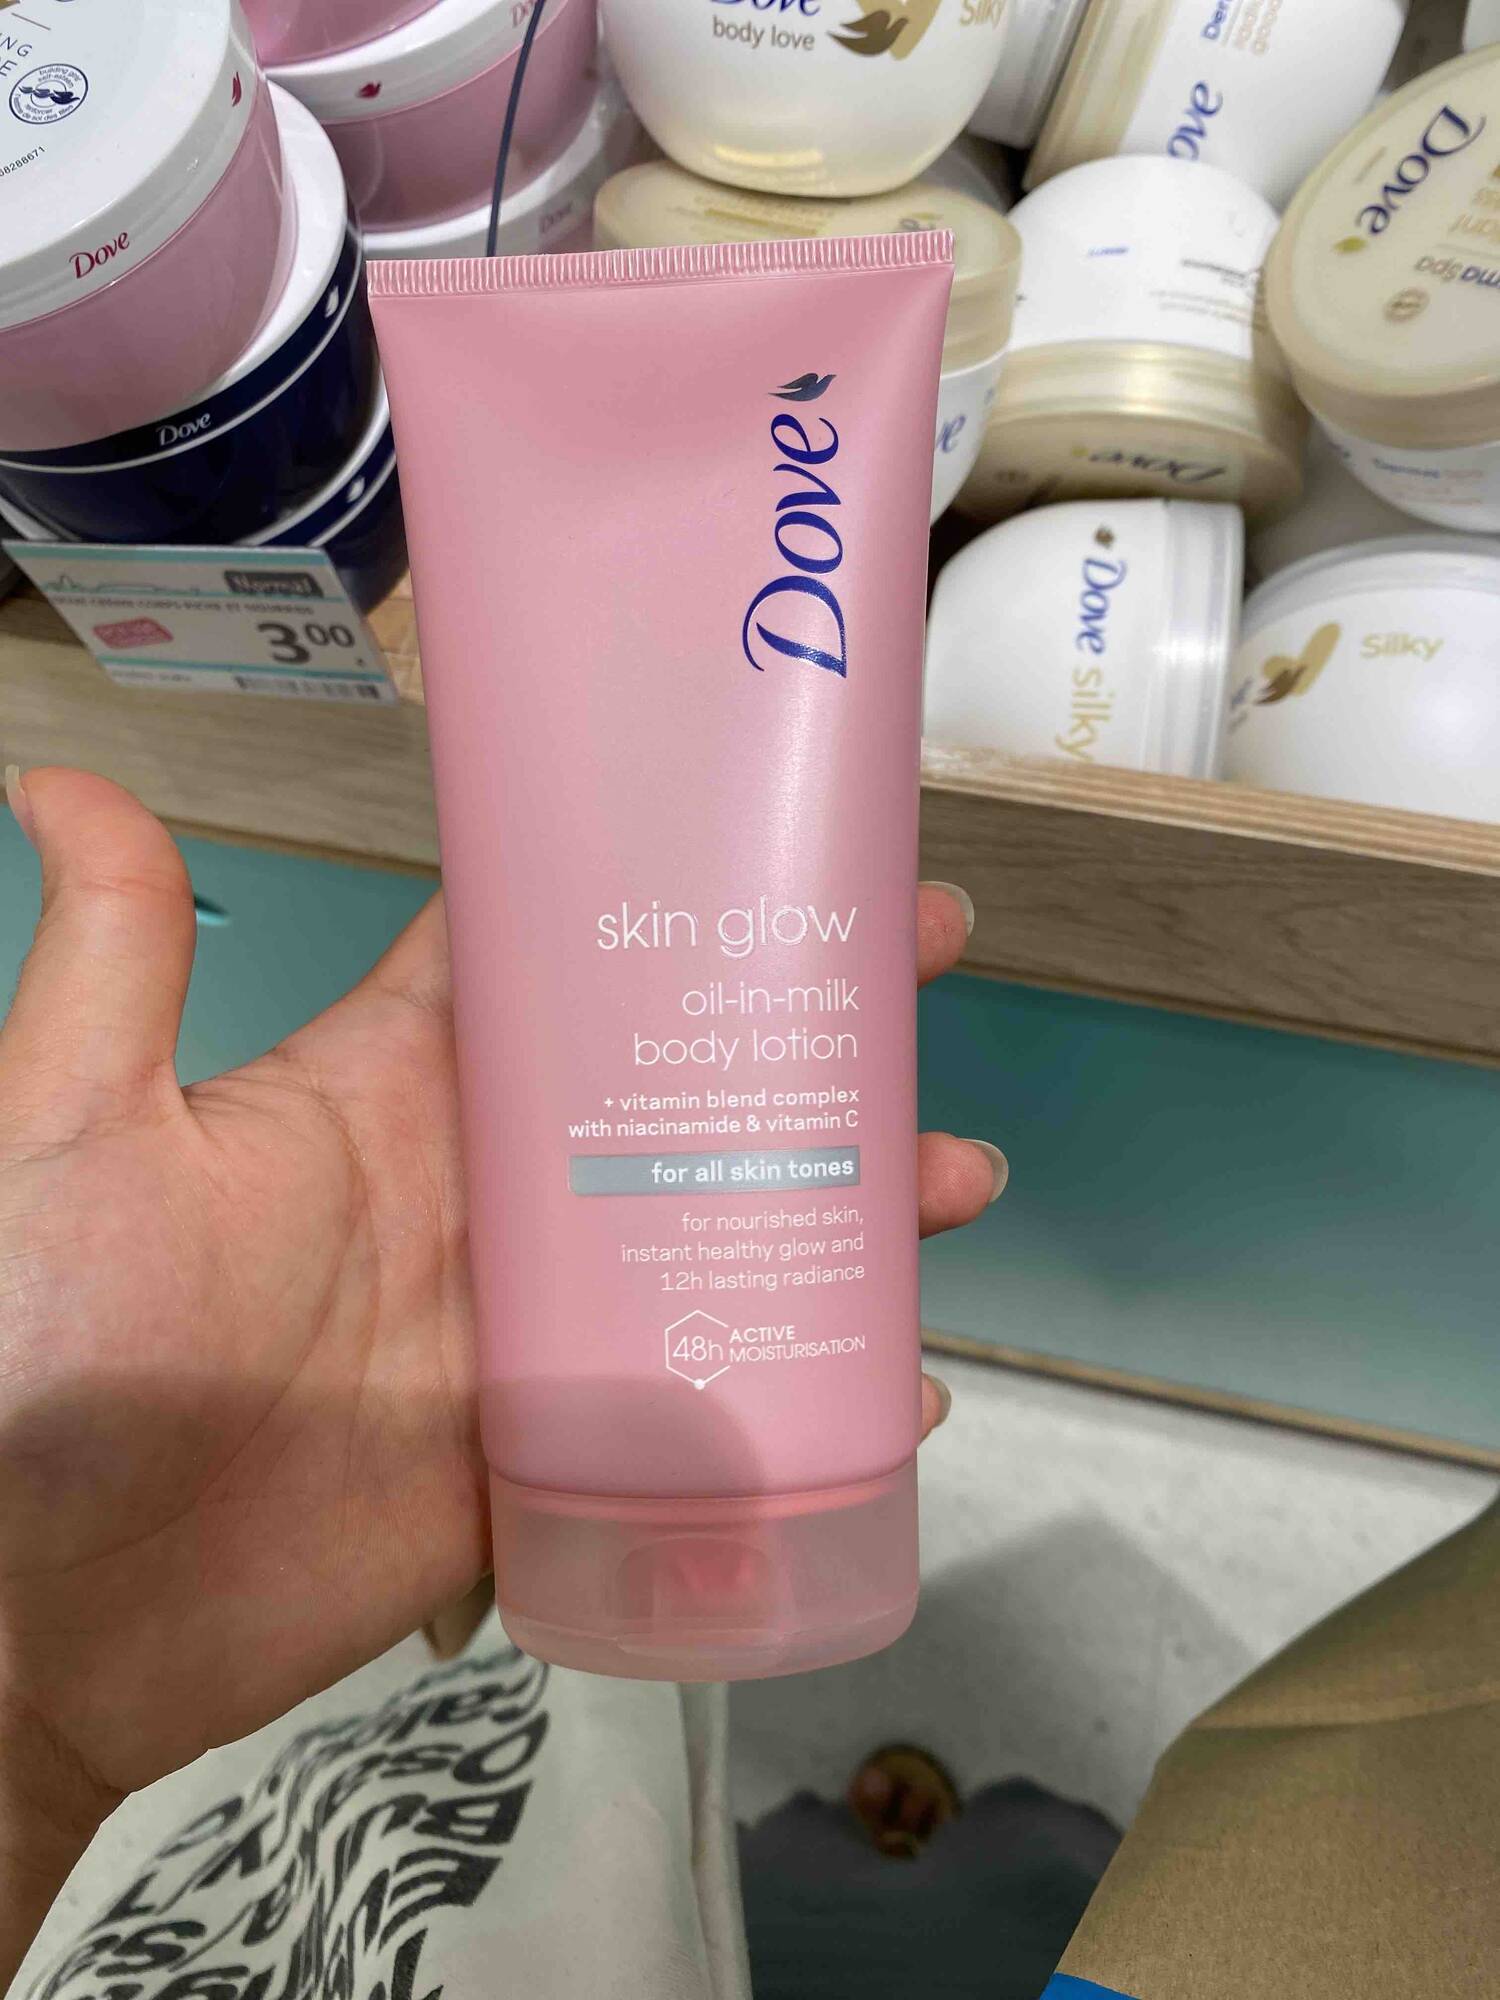 DOVE - Skin glow oil-in-milk body lotion